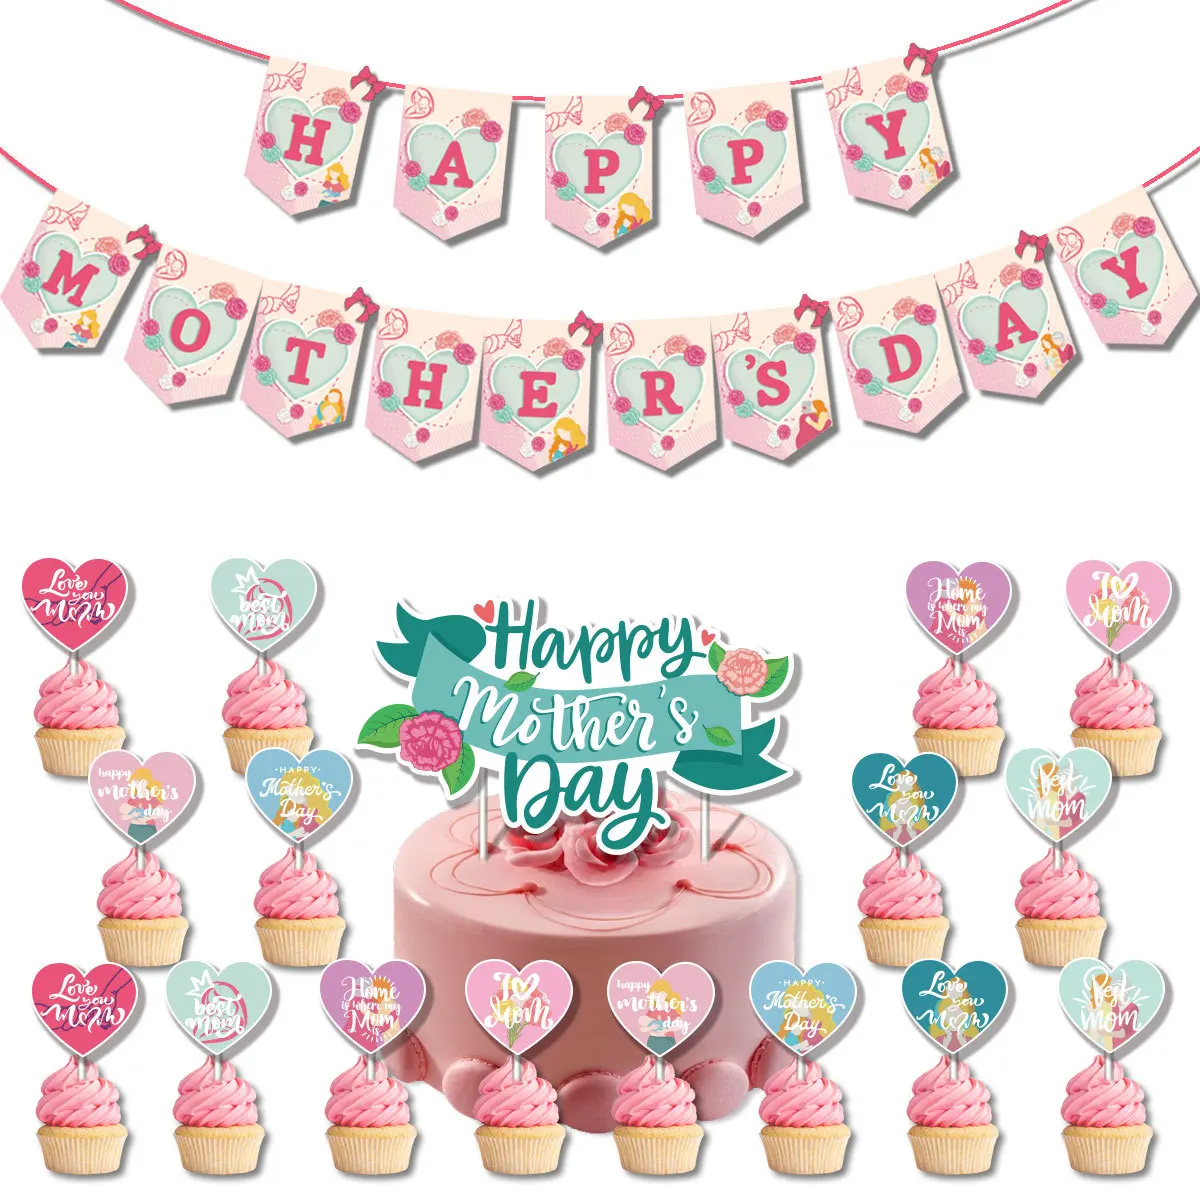 

SURSURPIRSE тема на день матери, зеленый белый латексный шар, розовый бумажный баннер, Топпер для капкейков, товары для красивого Дня матери